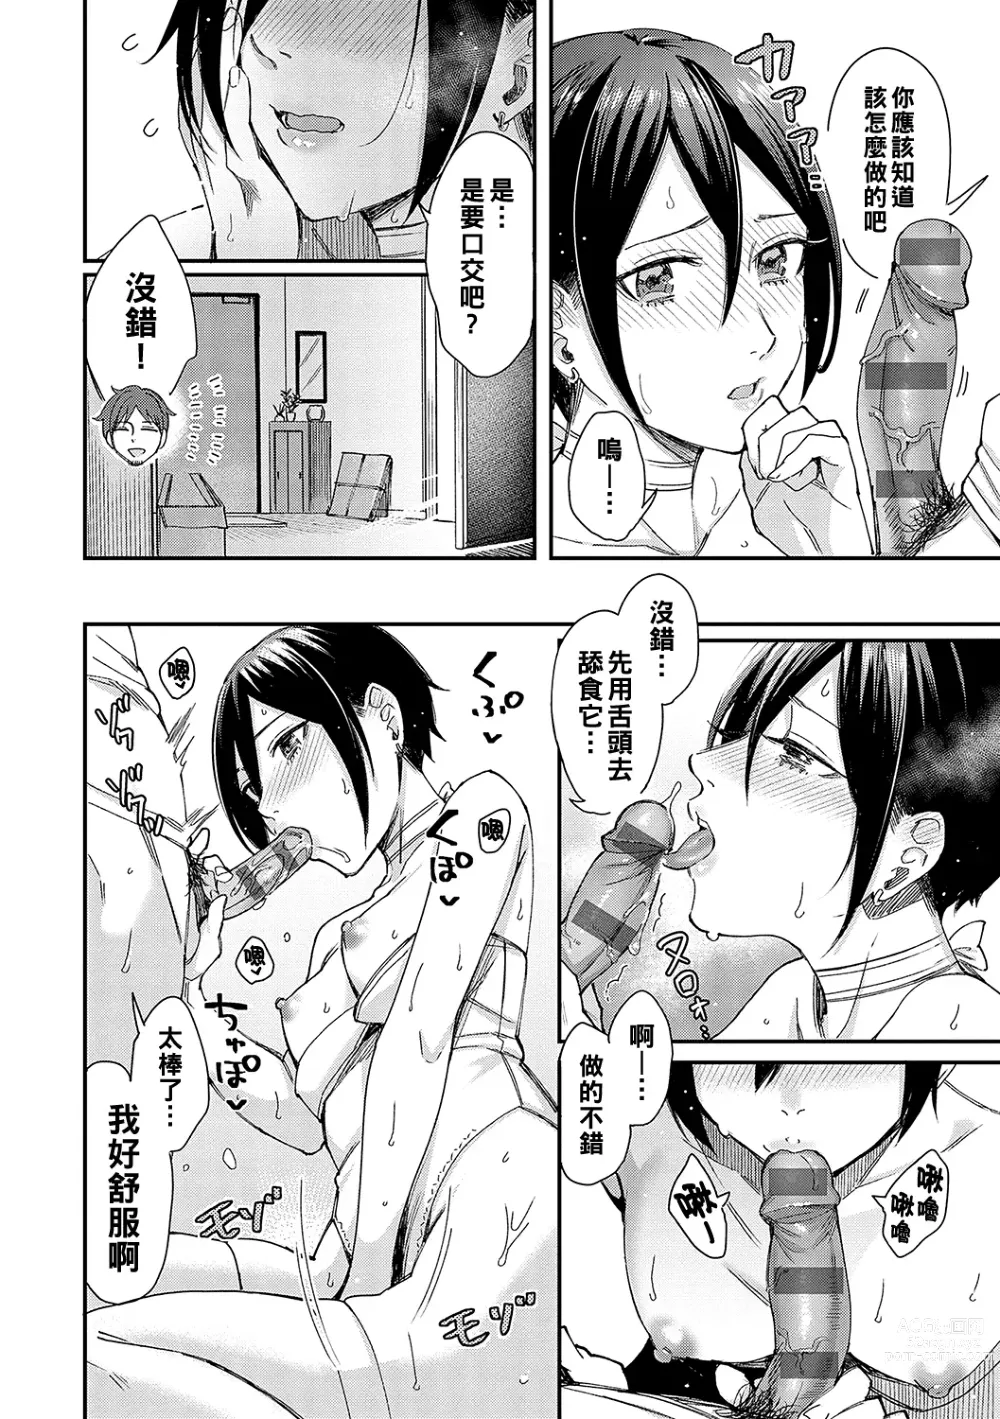 Page 14 of manga Kimi wa Tennenshoku